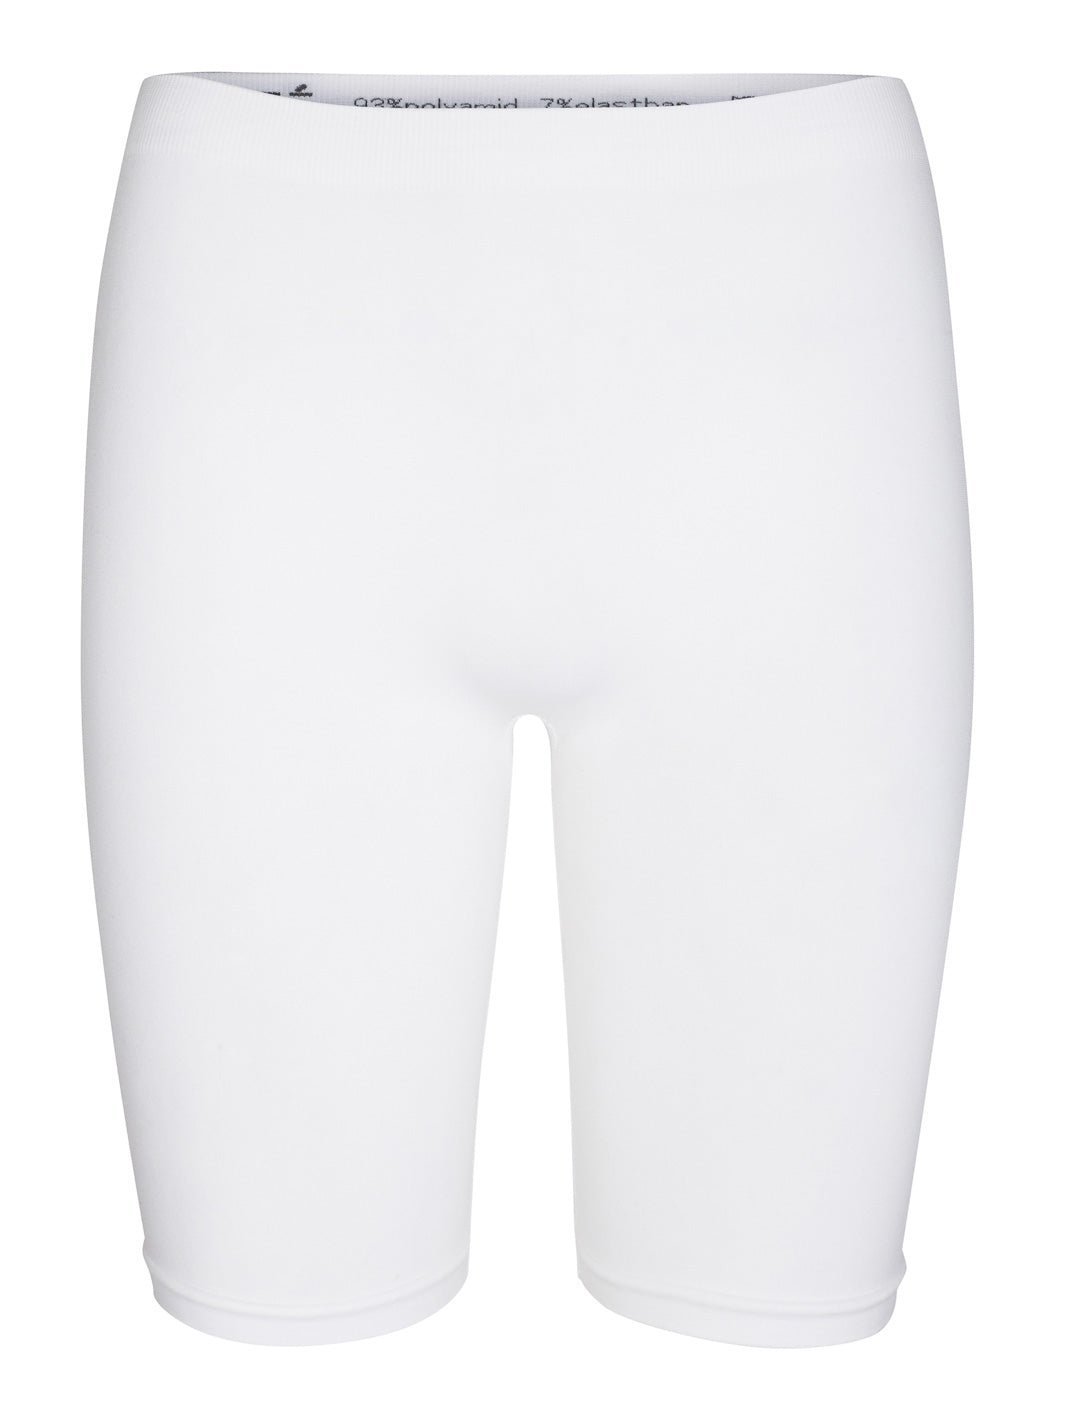 Liberté Ninna shorts white - Online - Mode